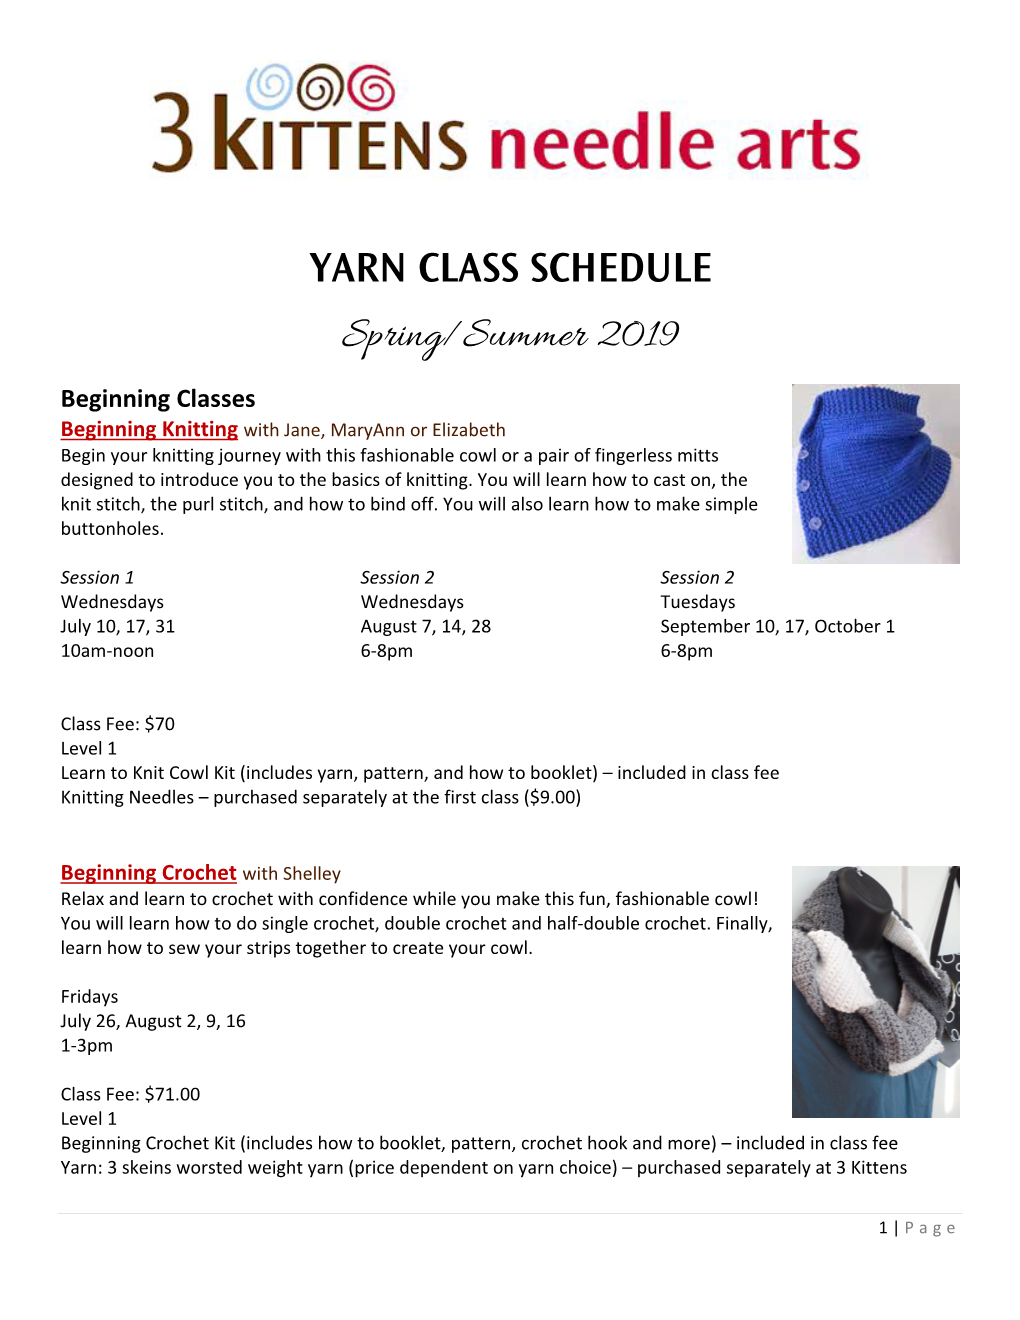 YARN CLASS SCHEDULE Spring/Summer 2019